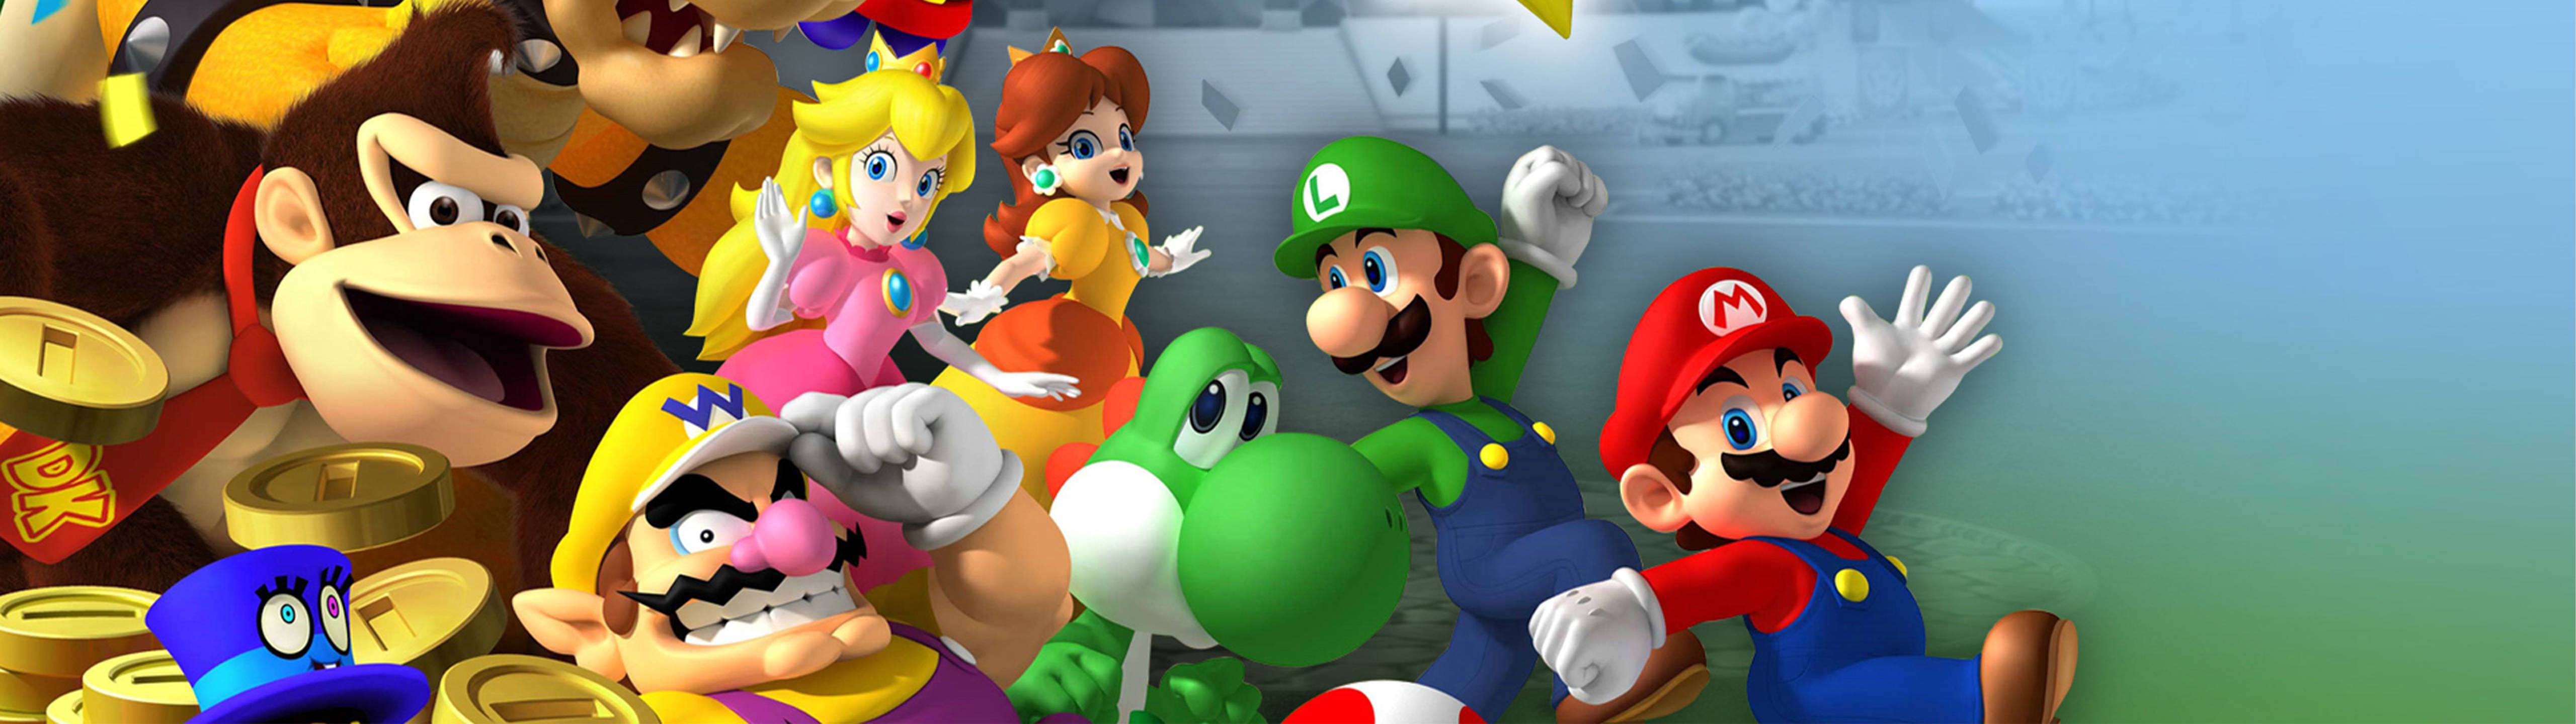 5120x1440 Game Mario Luigi And Friends